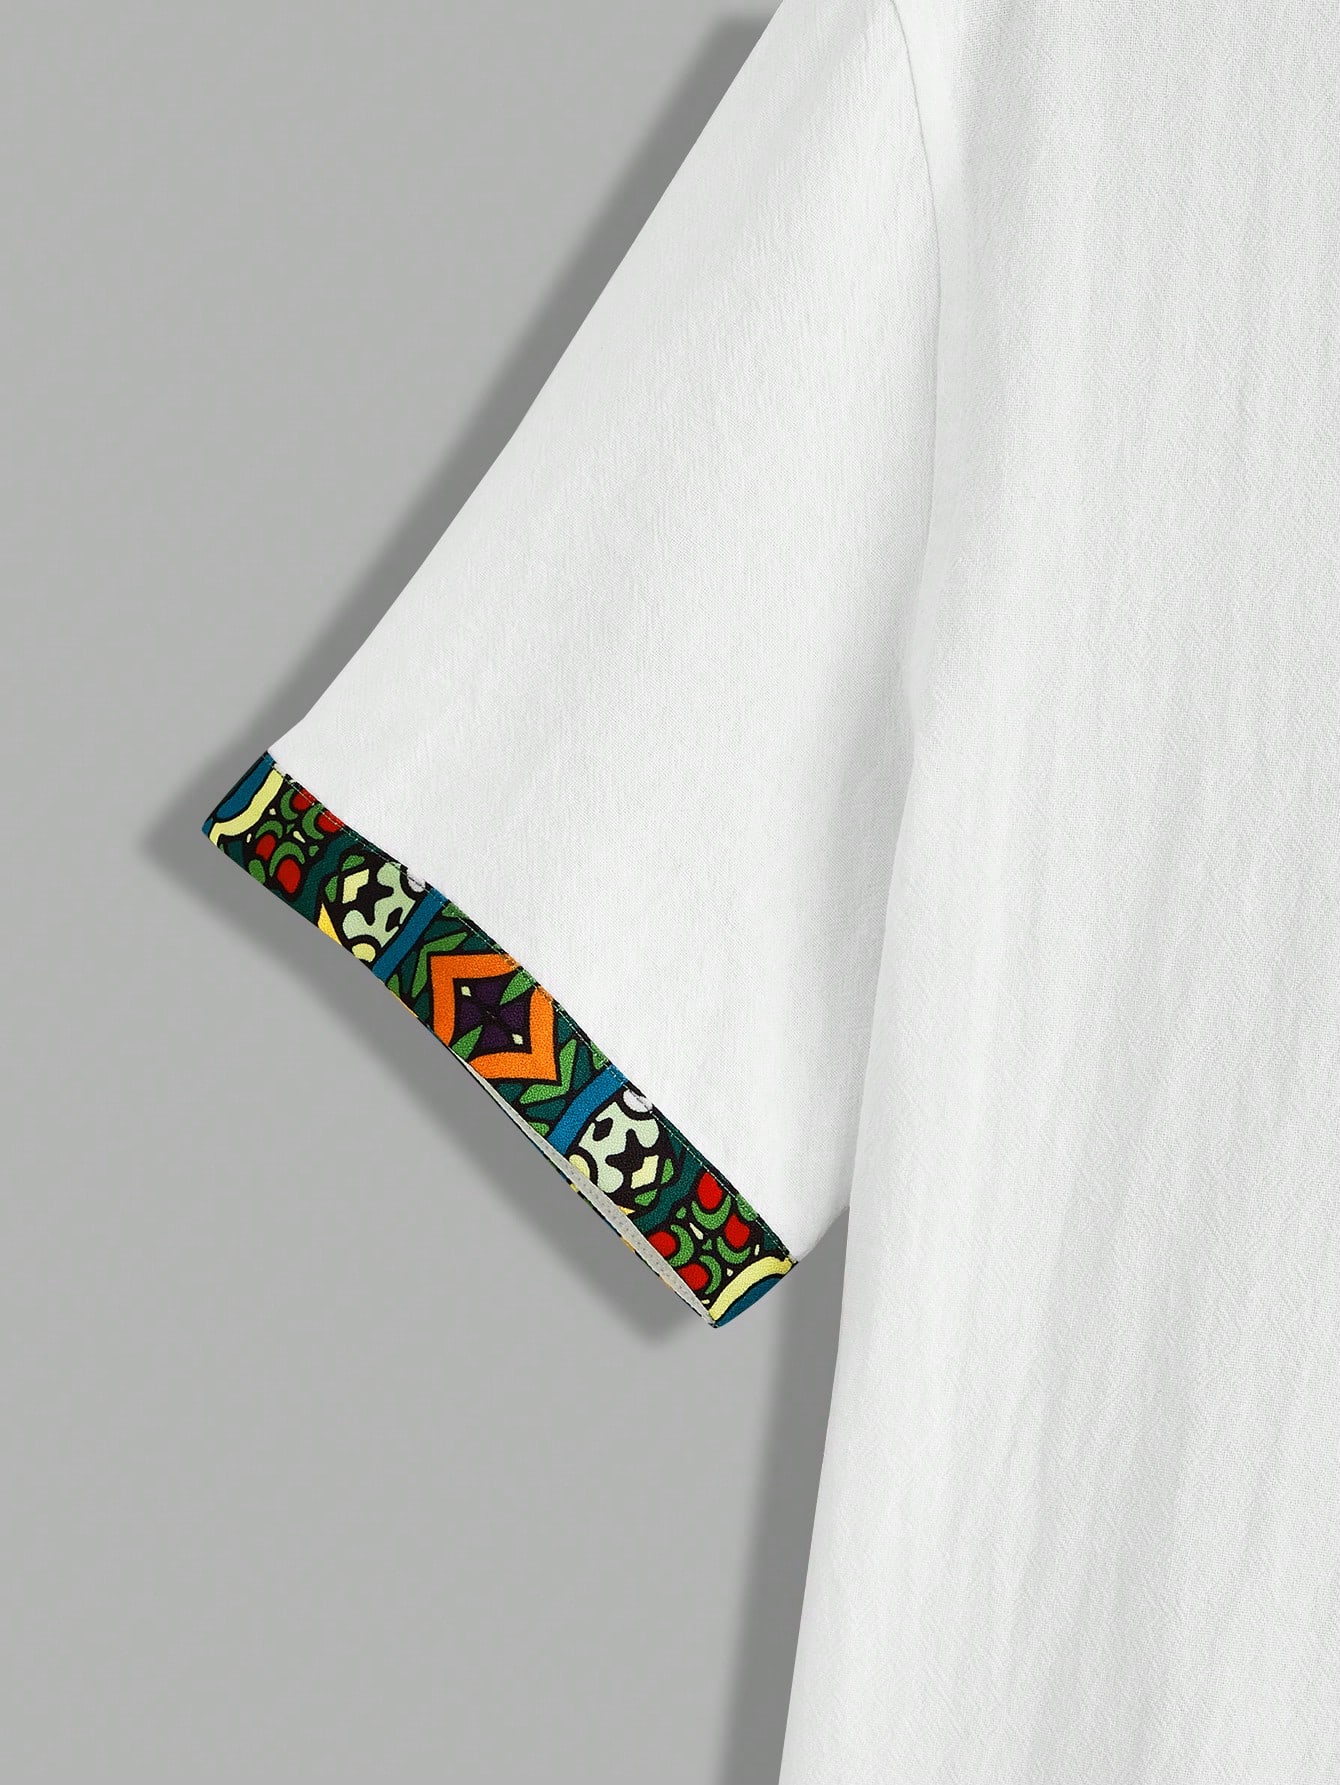 Мужская повседневная тканая рубашка Manfinity RSRT с принтом в стиле пэчворк, белый рубашка мужская хлопковая с длинным рукавом свободная повседневная блуза с карманами модная уличная одежда в стиле пэчворк для офиса